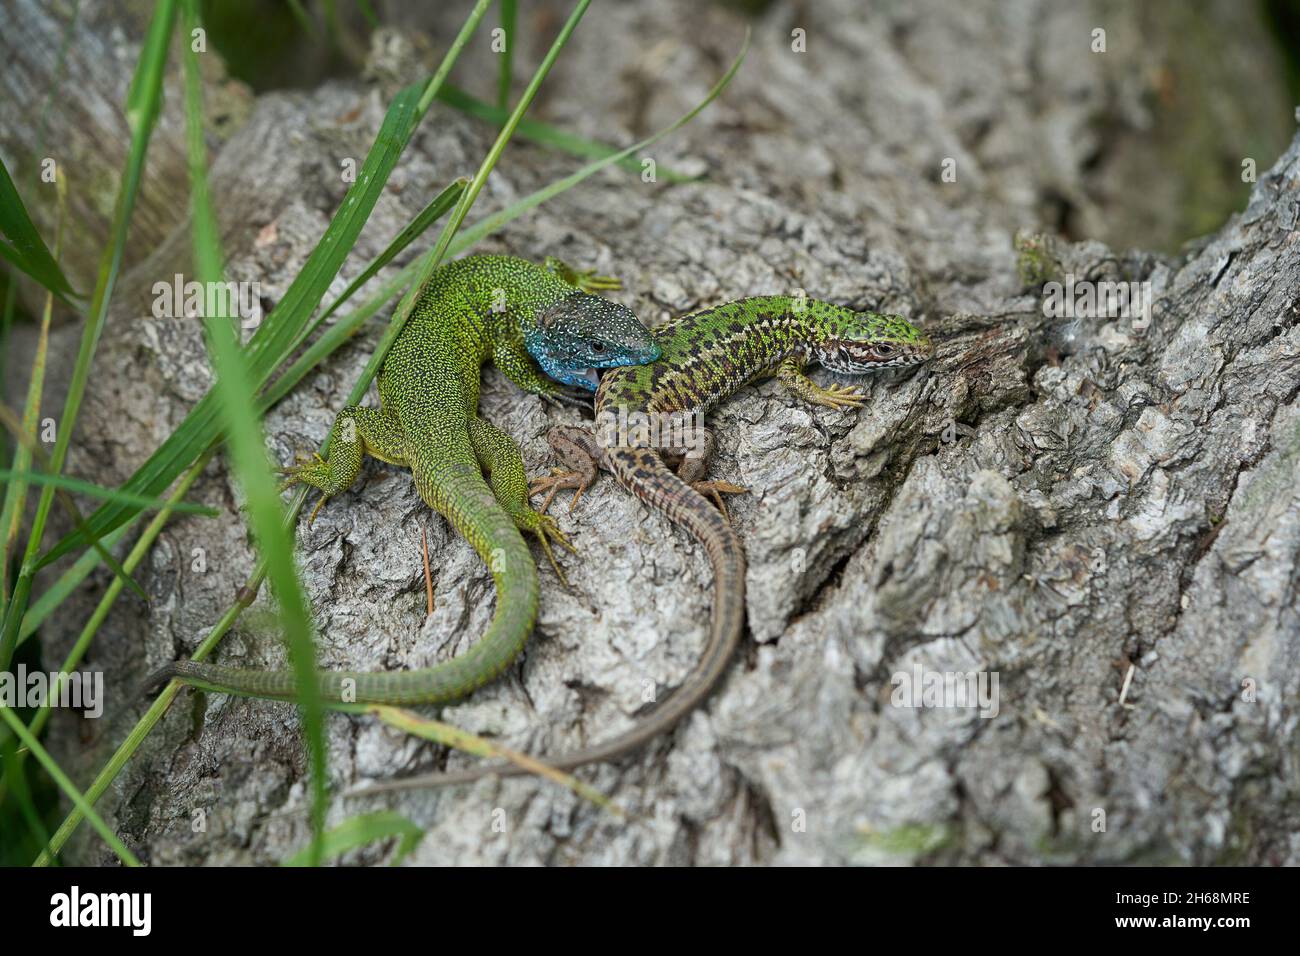 Wildlife foto del lagarto Verde Europeo Lacerta viridis Foto de stock